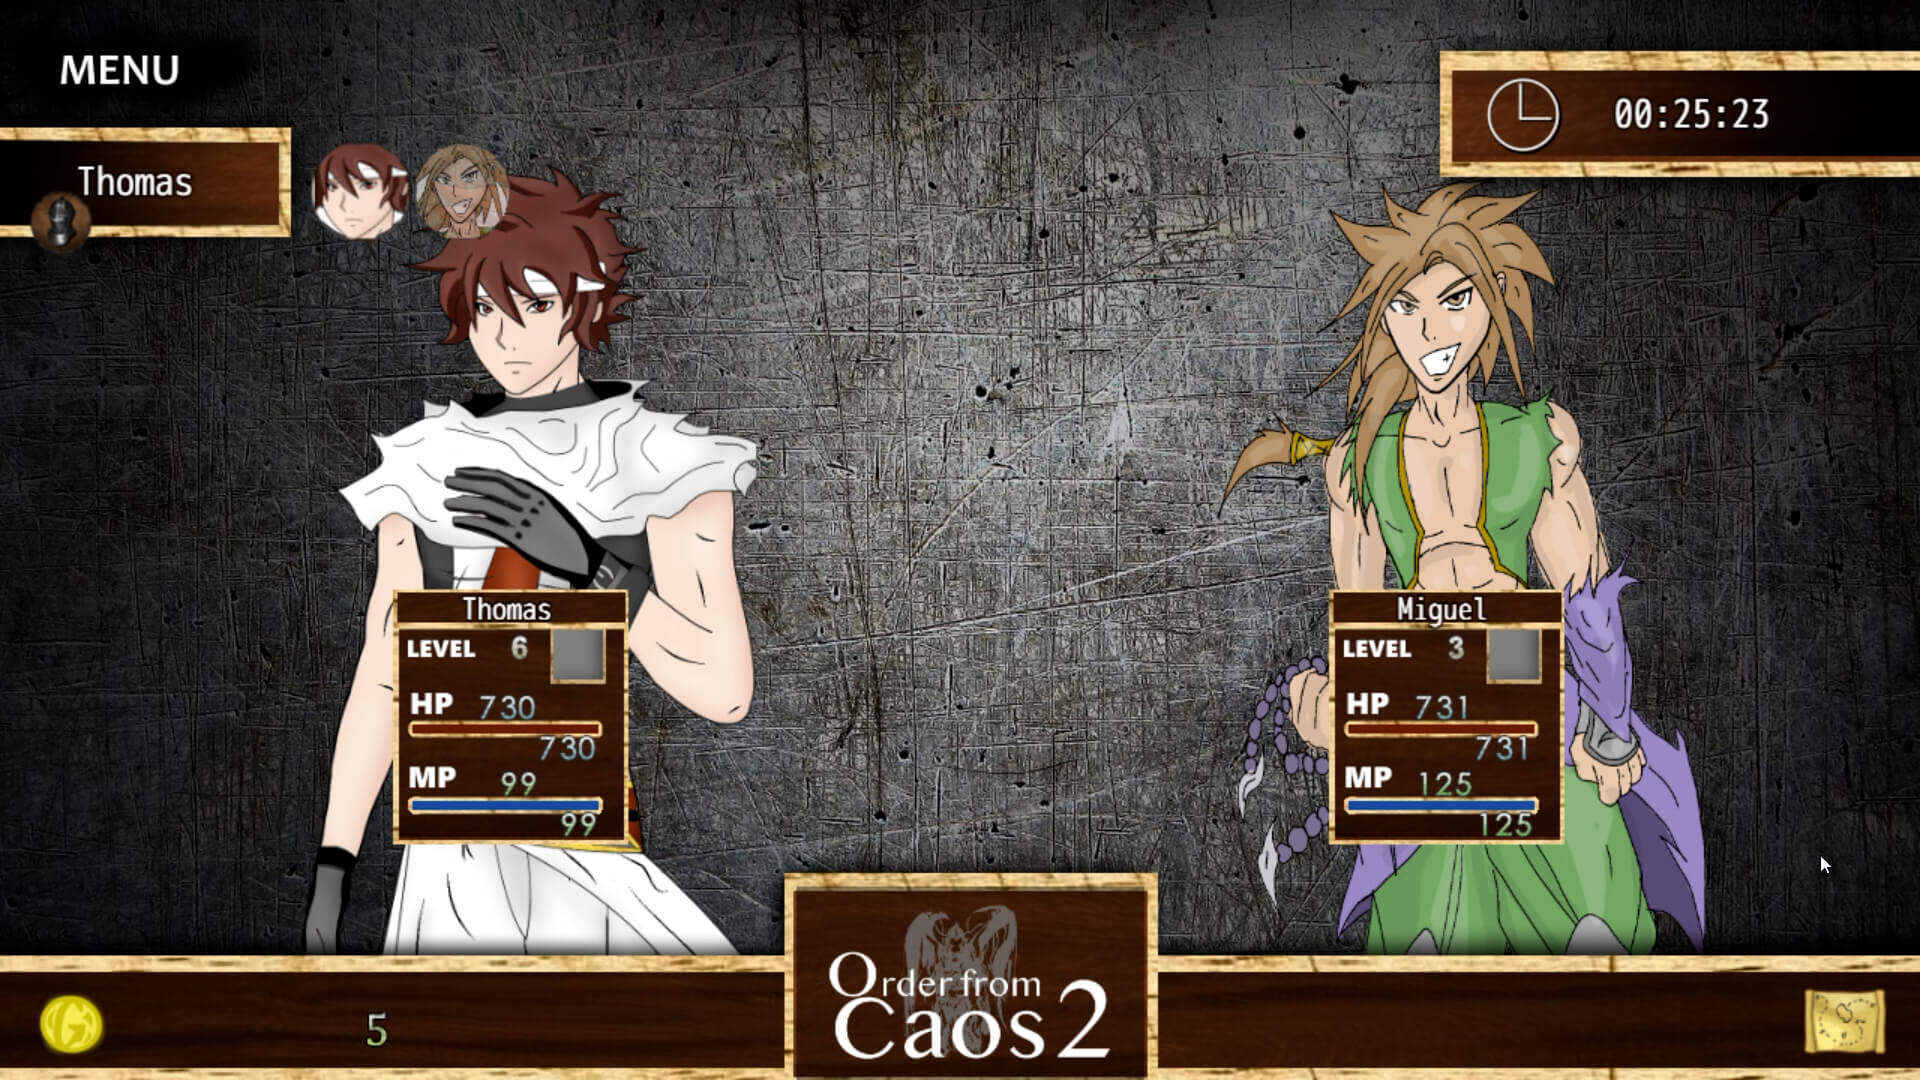 Menu principal do jogo de RPG Order from Caos 2 com os personagens Thomás e Miguel.